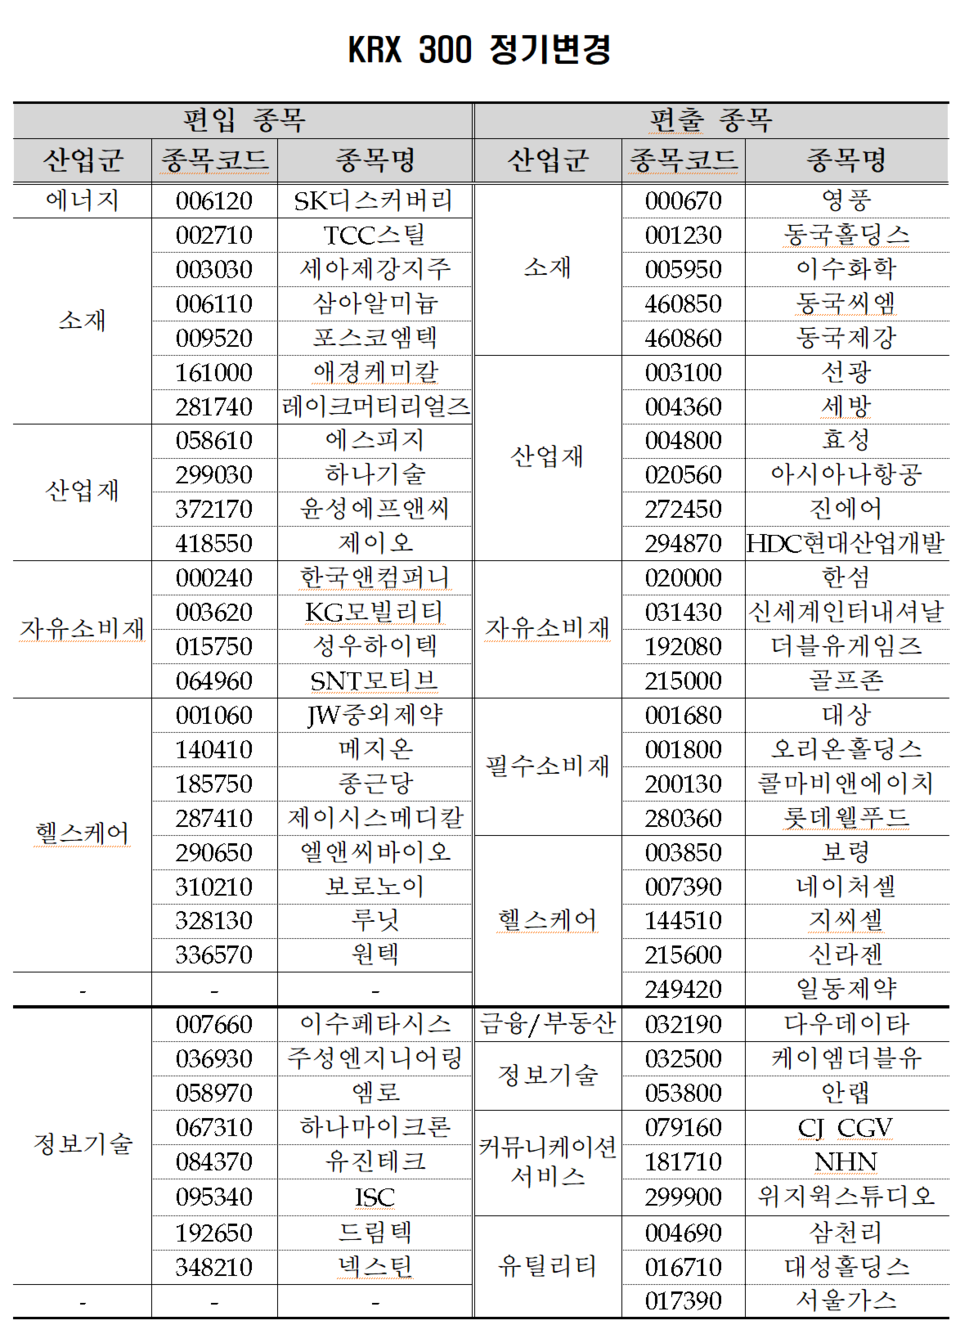 코스피200·코스닥150·KRX300 등 주요 대표지수 구성 종목이 다음 달 15일부터 변경 적용된다. /자료=한국거래소